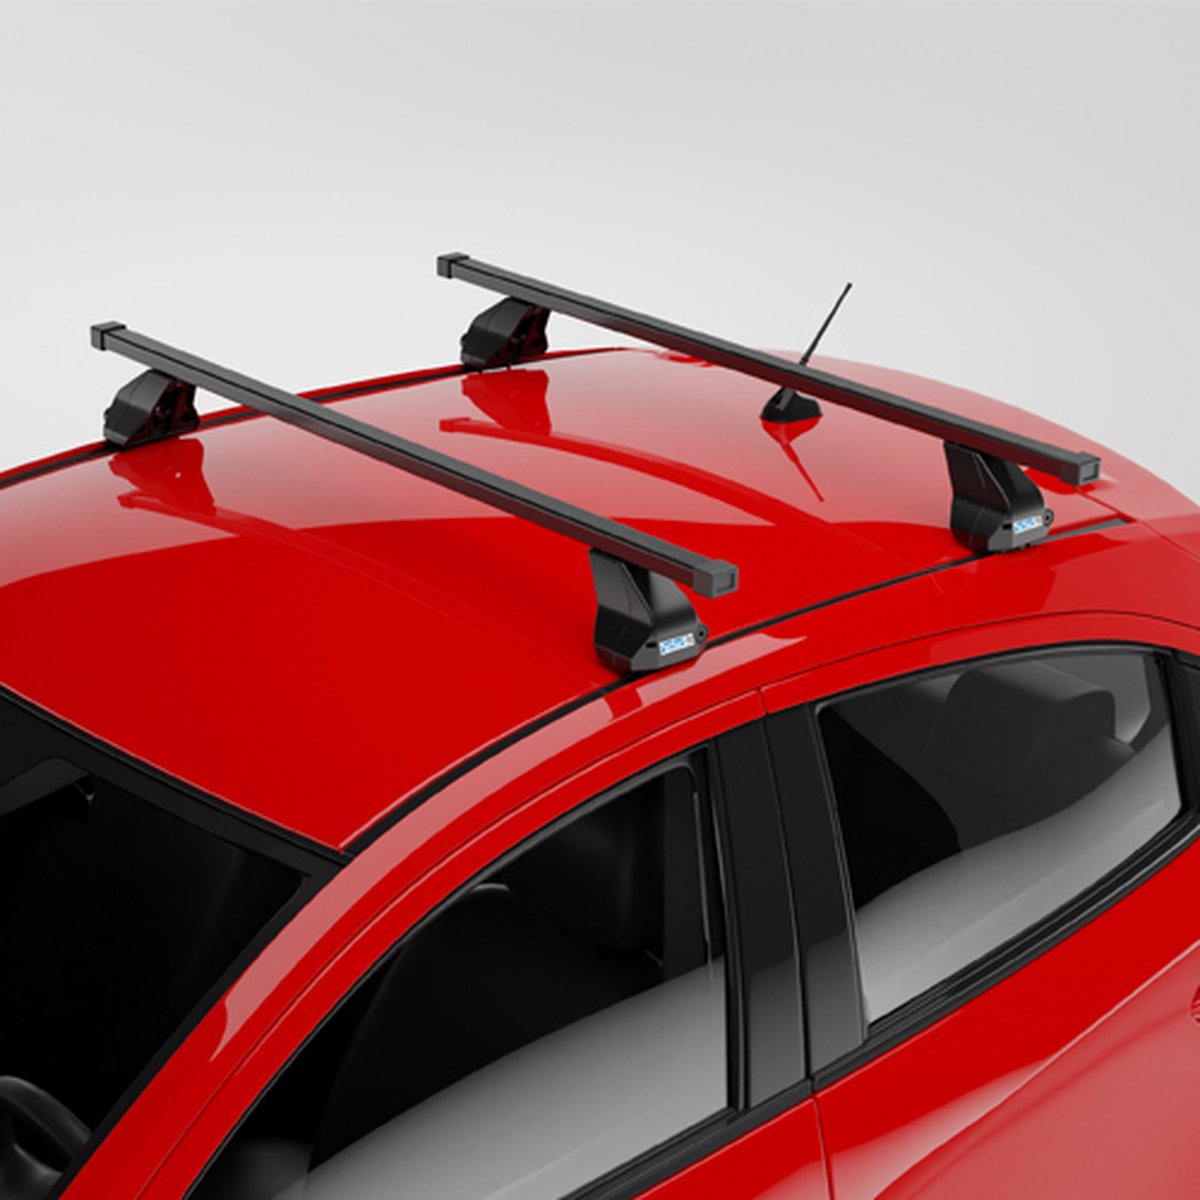 Dakdragers geschikt voor BMW 1-Serie (F20) 5 deurs hatchback 2015 t/m 2019